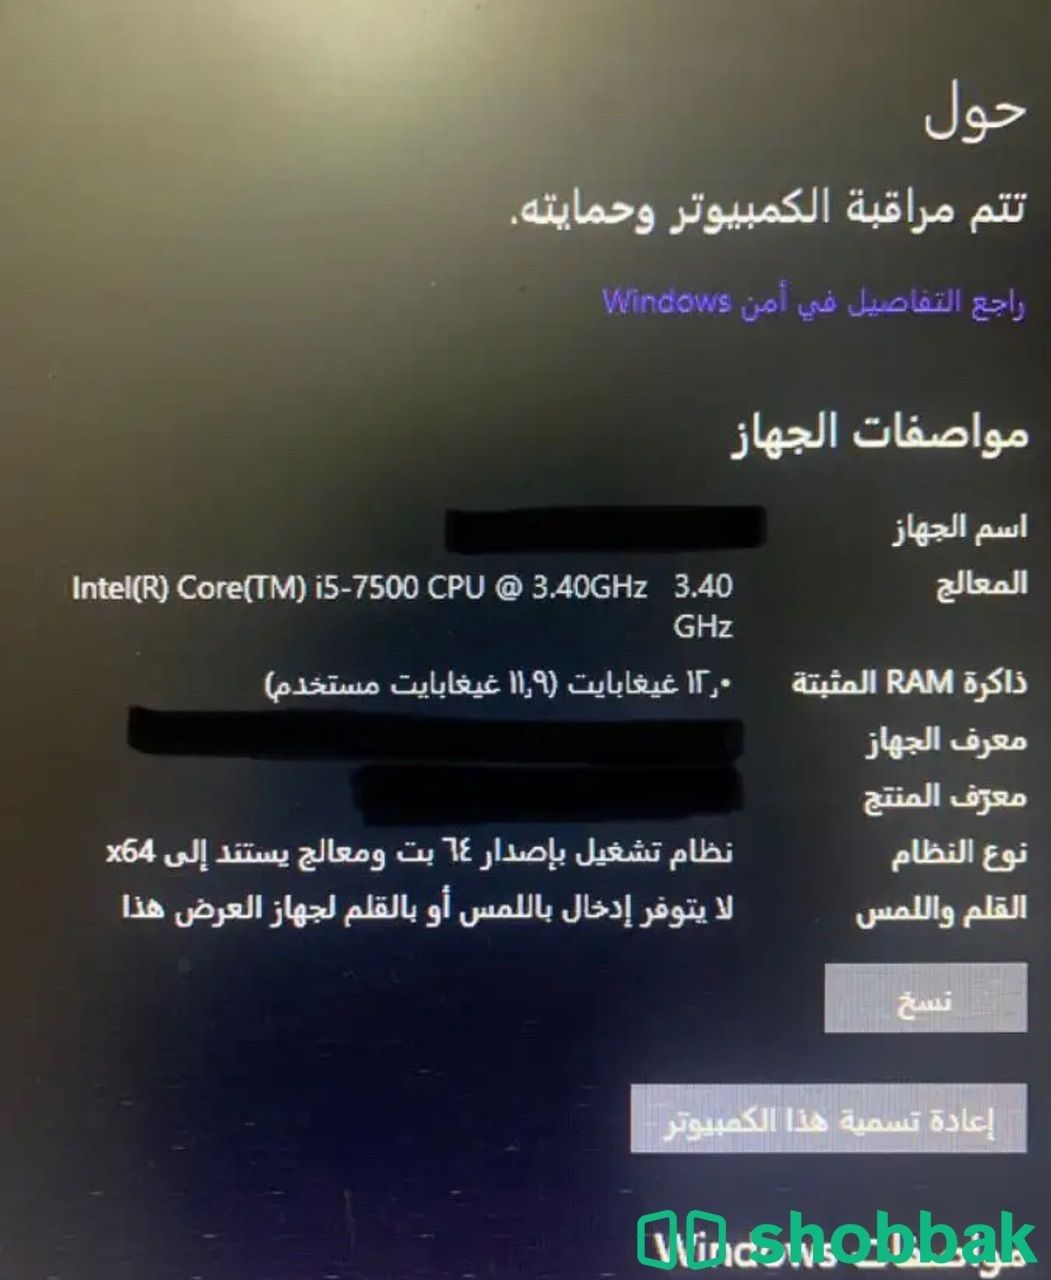 كمبيوتر hpمكتبي… Shobbak Saudi Arabia